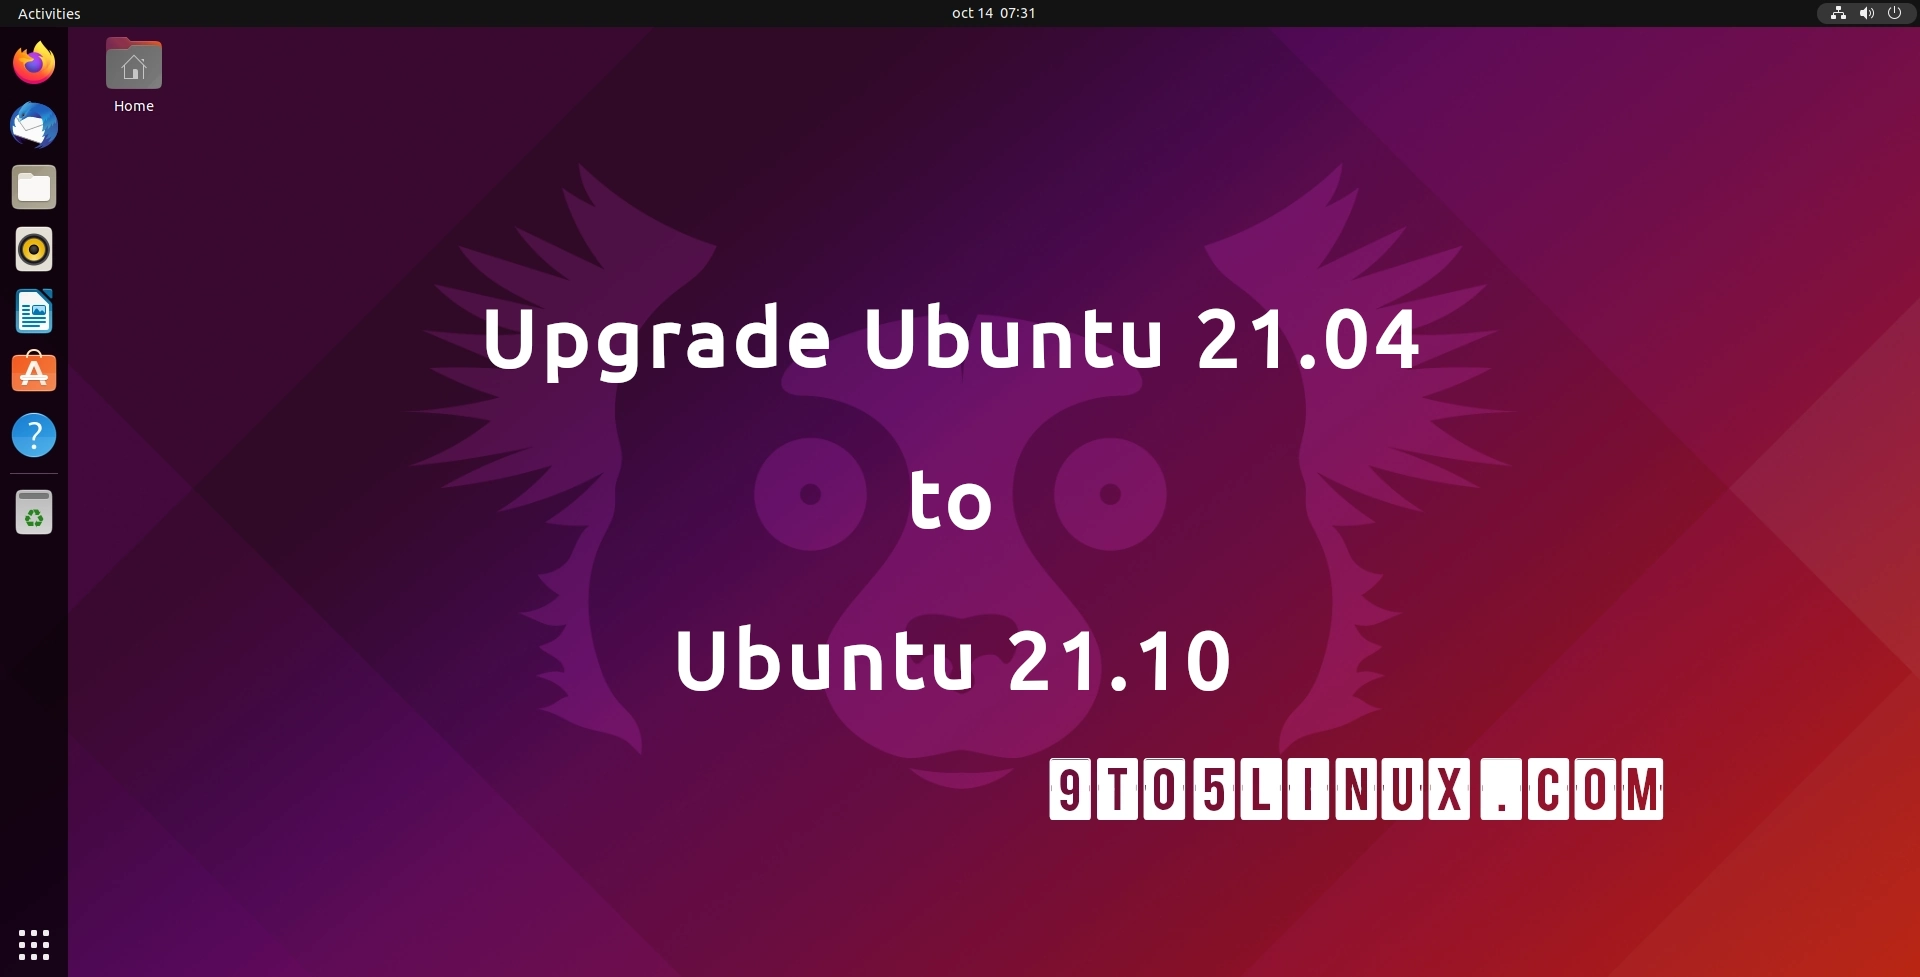 You Can Now Upgrade Ubuntu 21.04 to Ubuntu 21.10, Here’s How